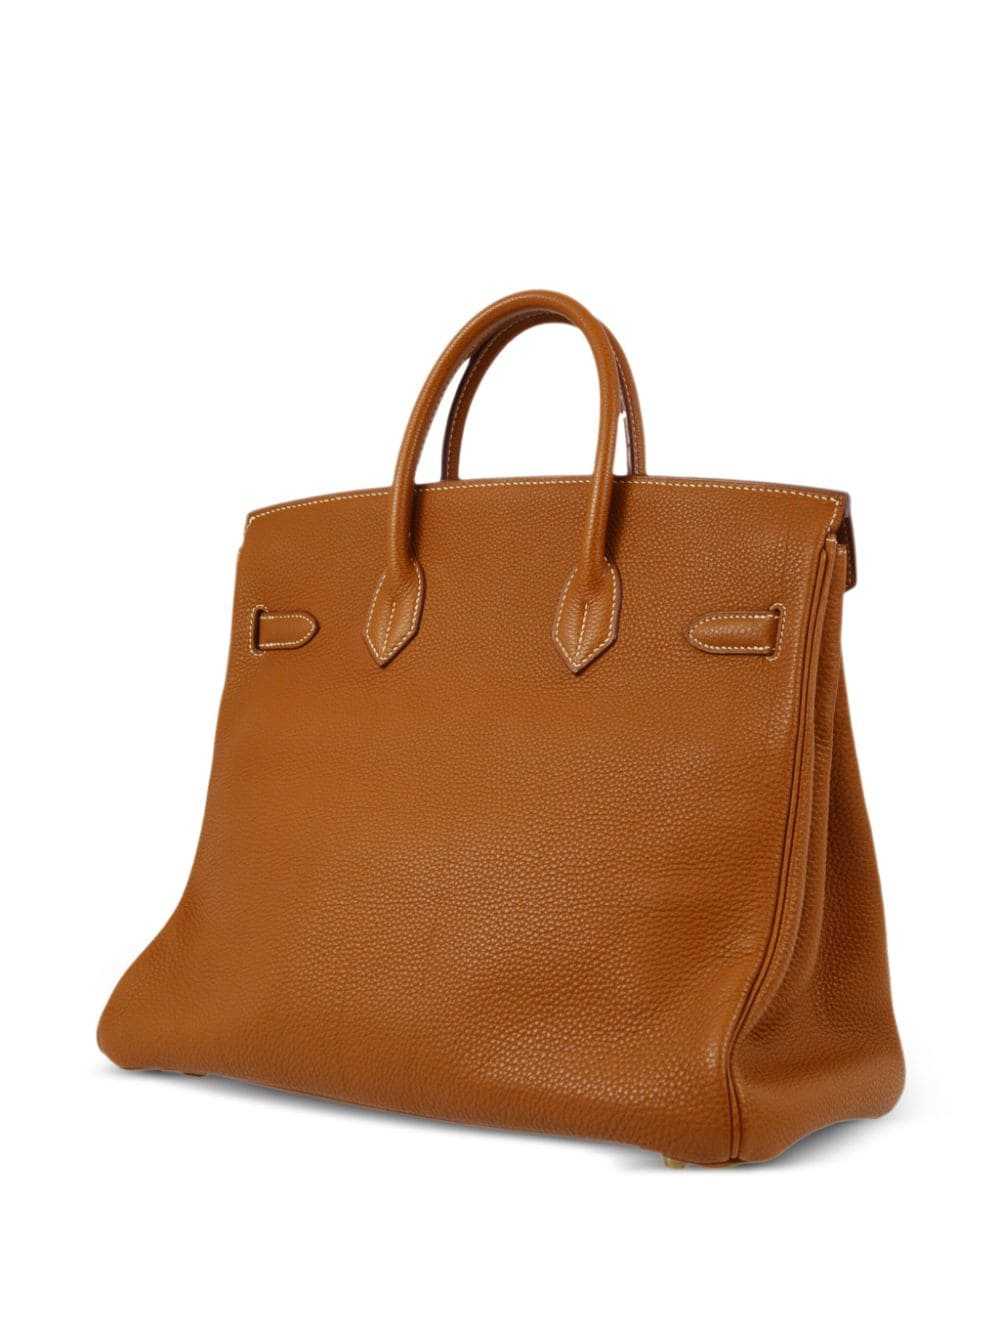 Hermès Pre-Owned 2001 Birkin 32 handbag - Brown - image 2